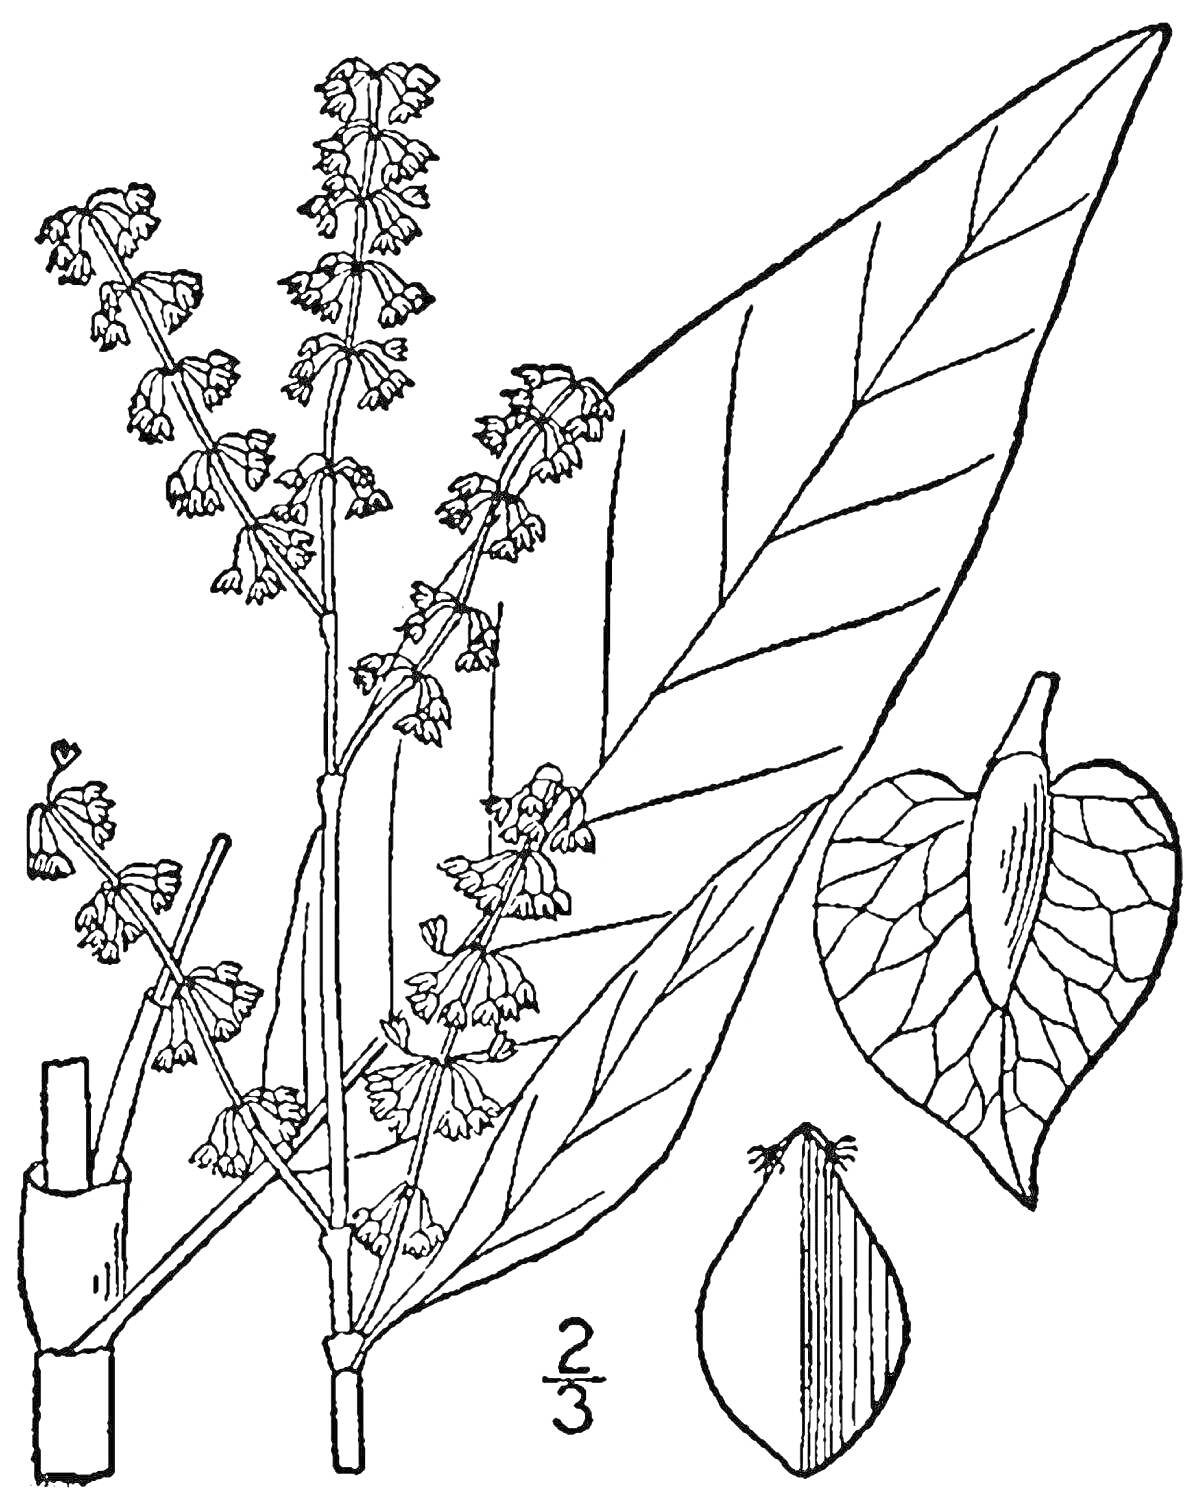 Раскраска Щавель с цветами, листьями и отдельными элементами